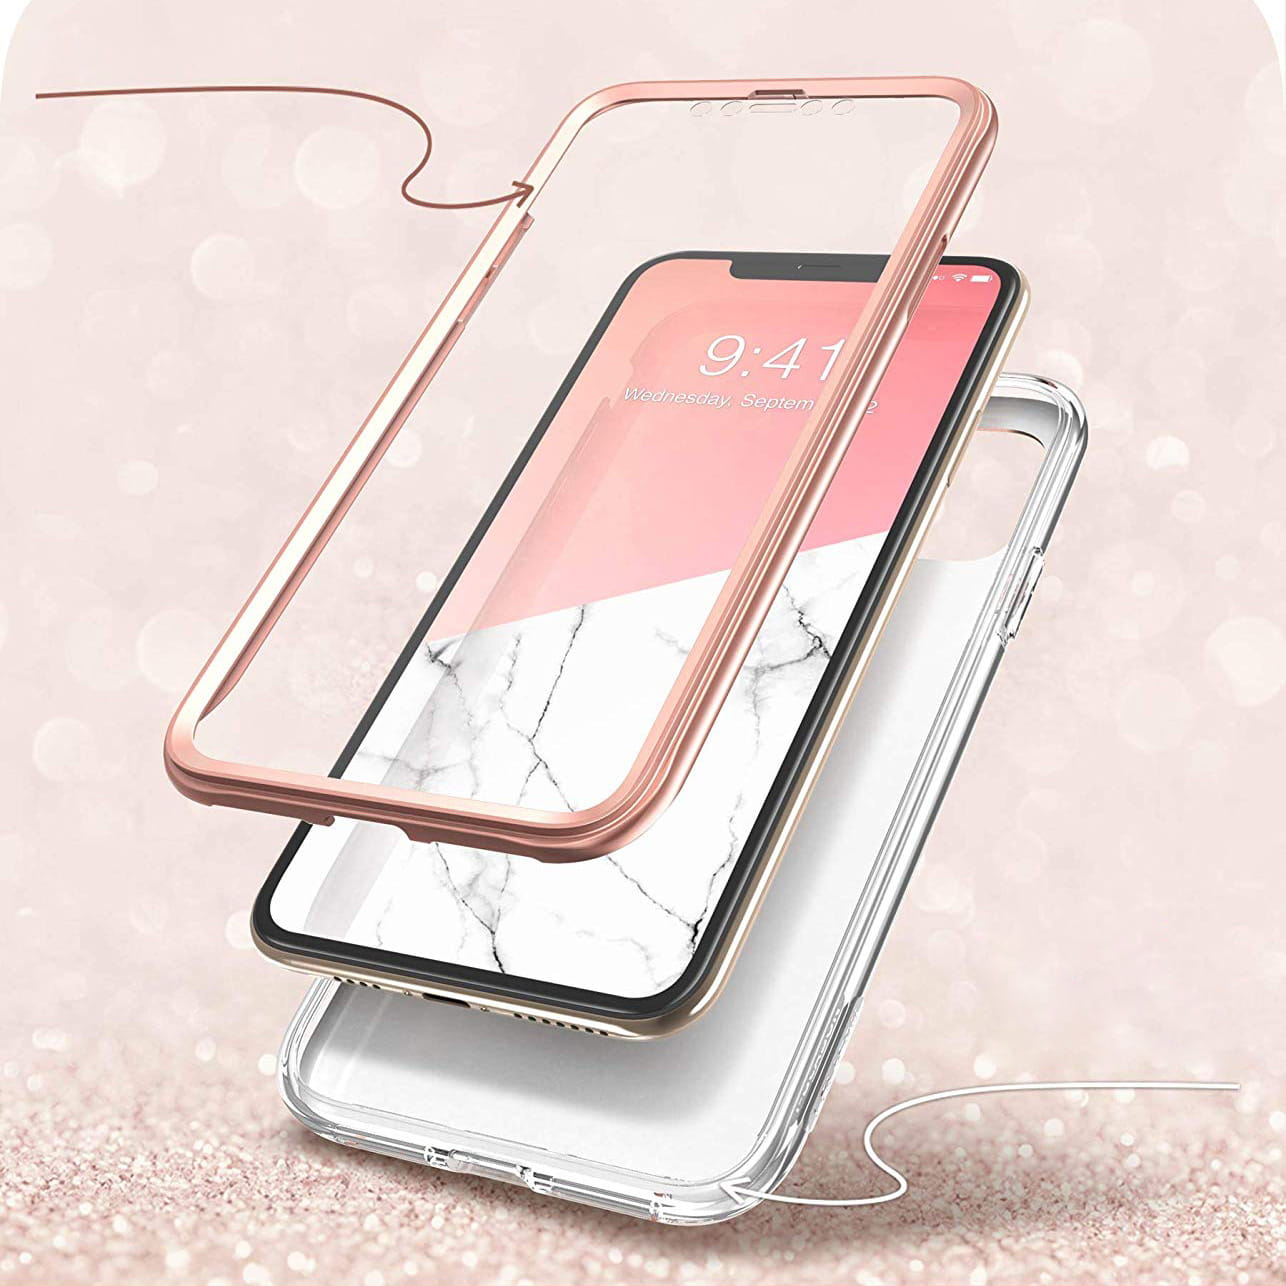 Gepanzerte Schutzhülle mit eingebautem Displayschutz Supcase i-Blason Cosmo für iPhone 11 Pro Max rosa.